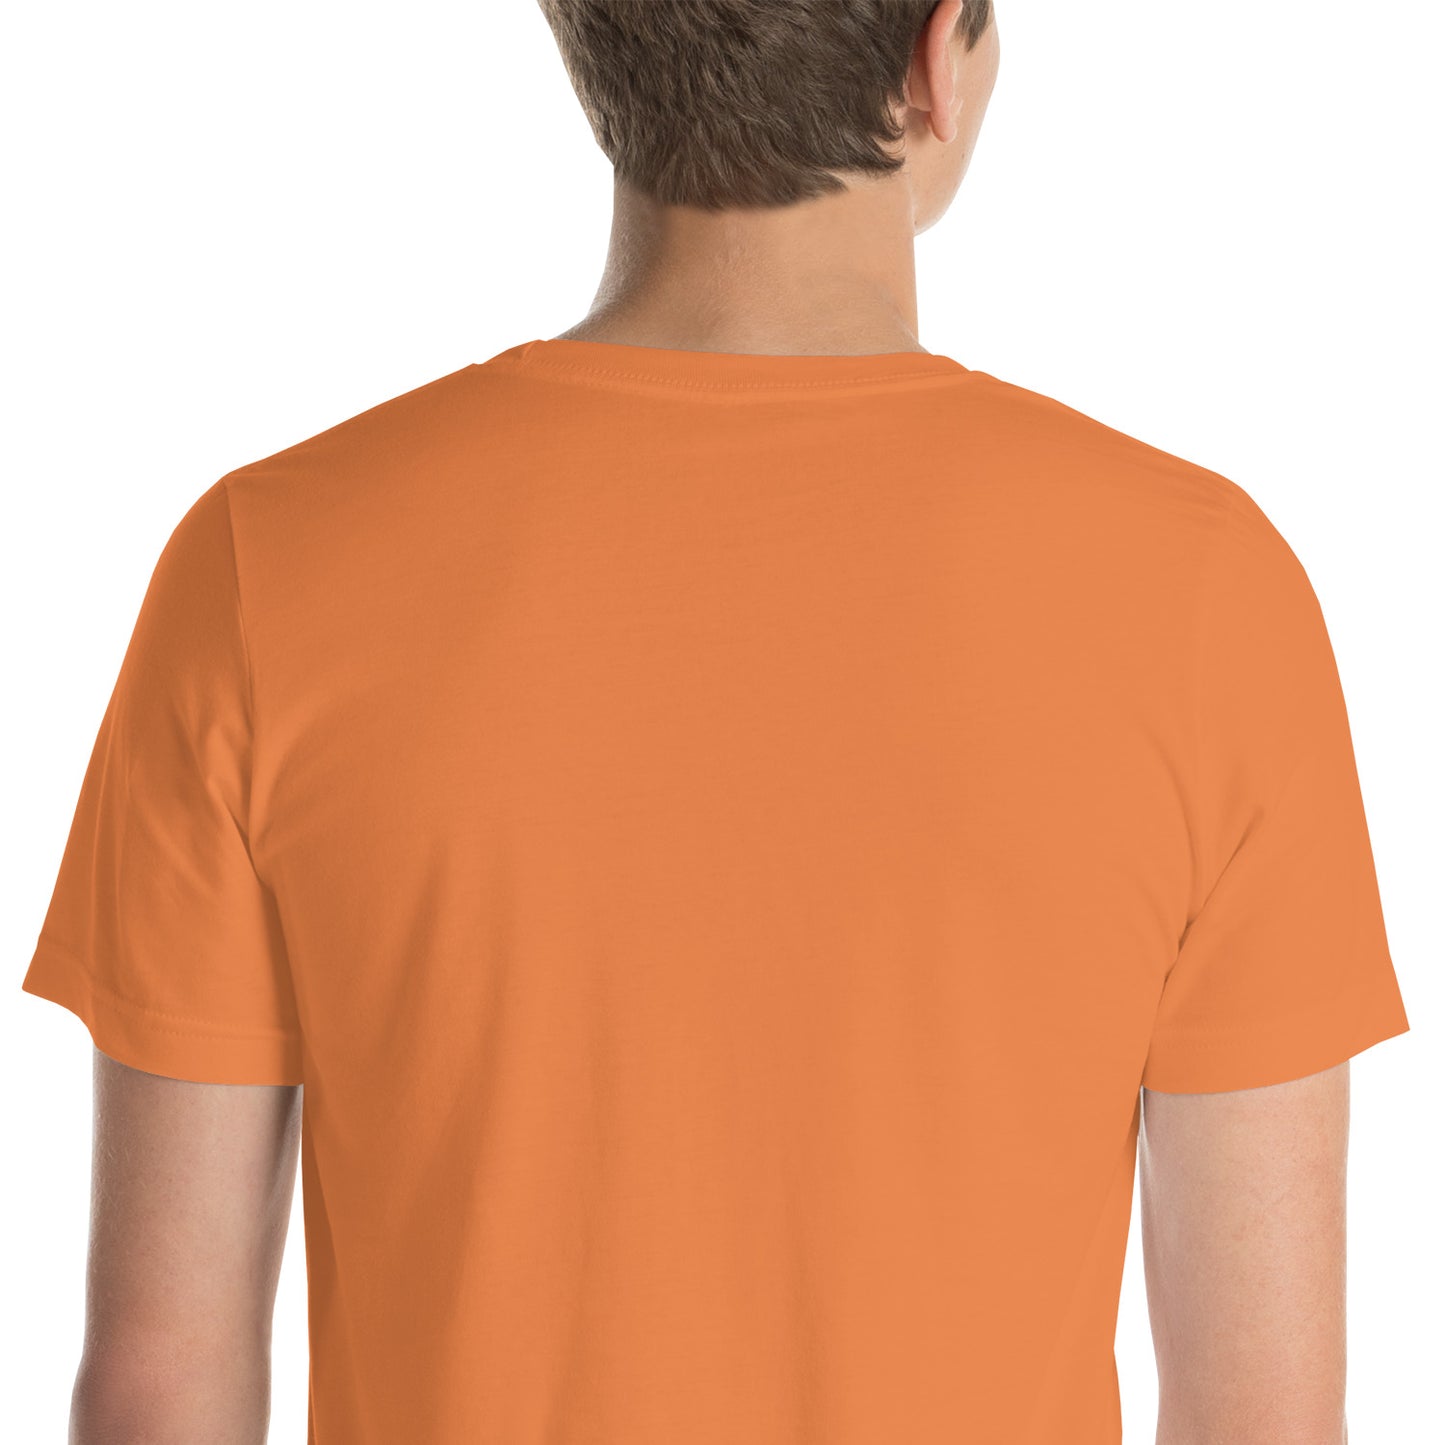 AQUA 13-22 2013 - HFAP -Camiseta unissex